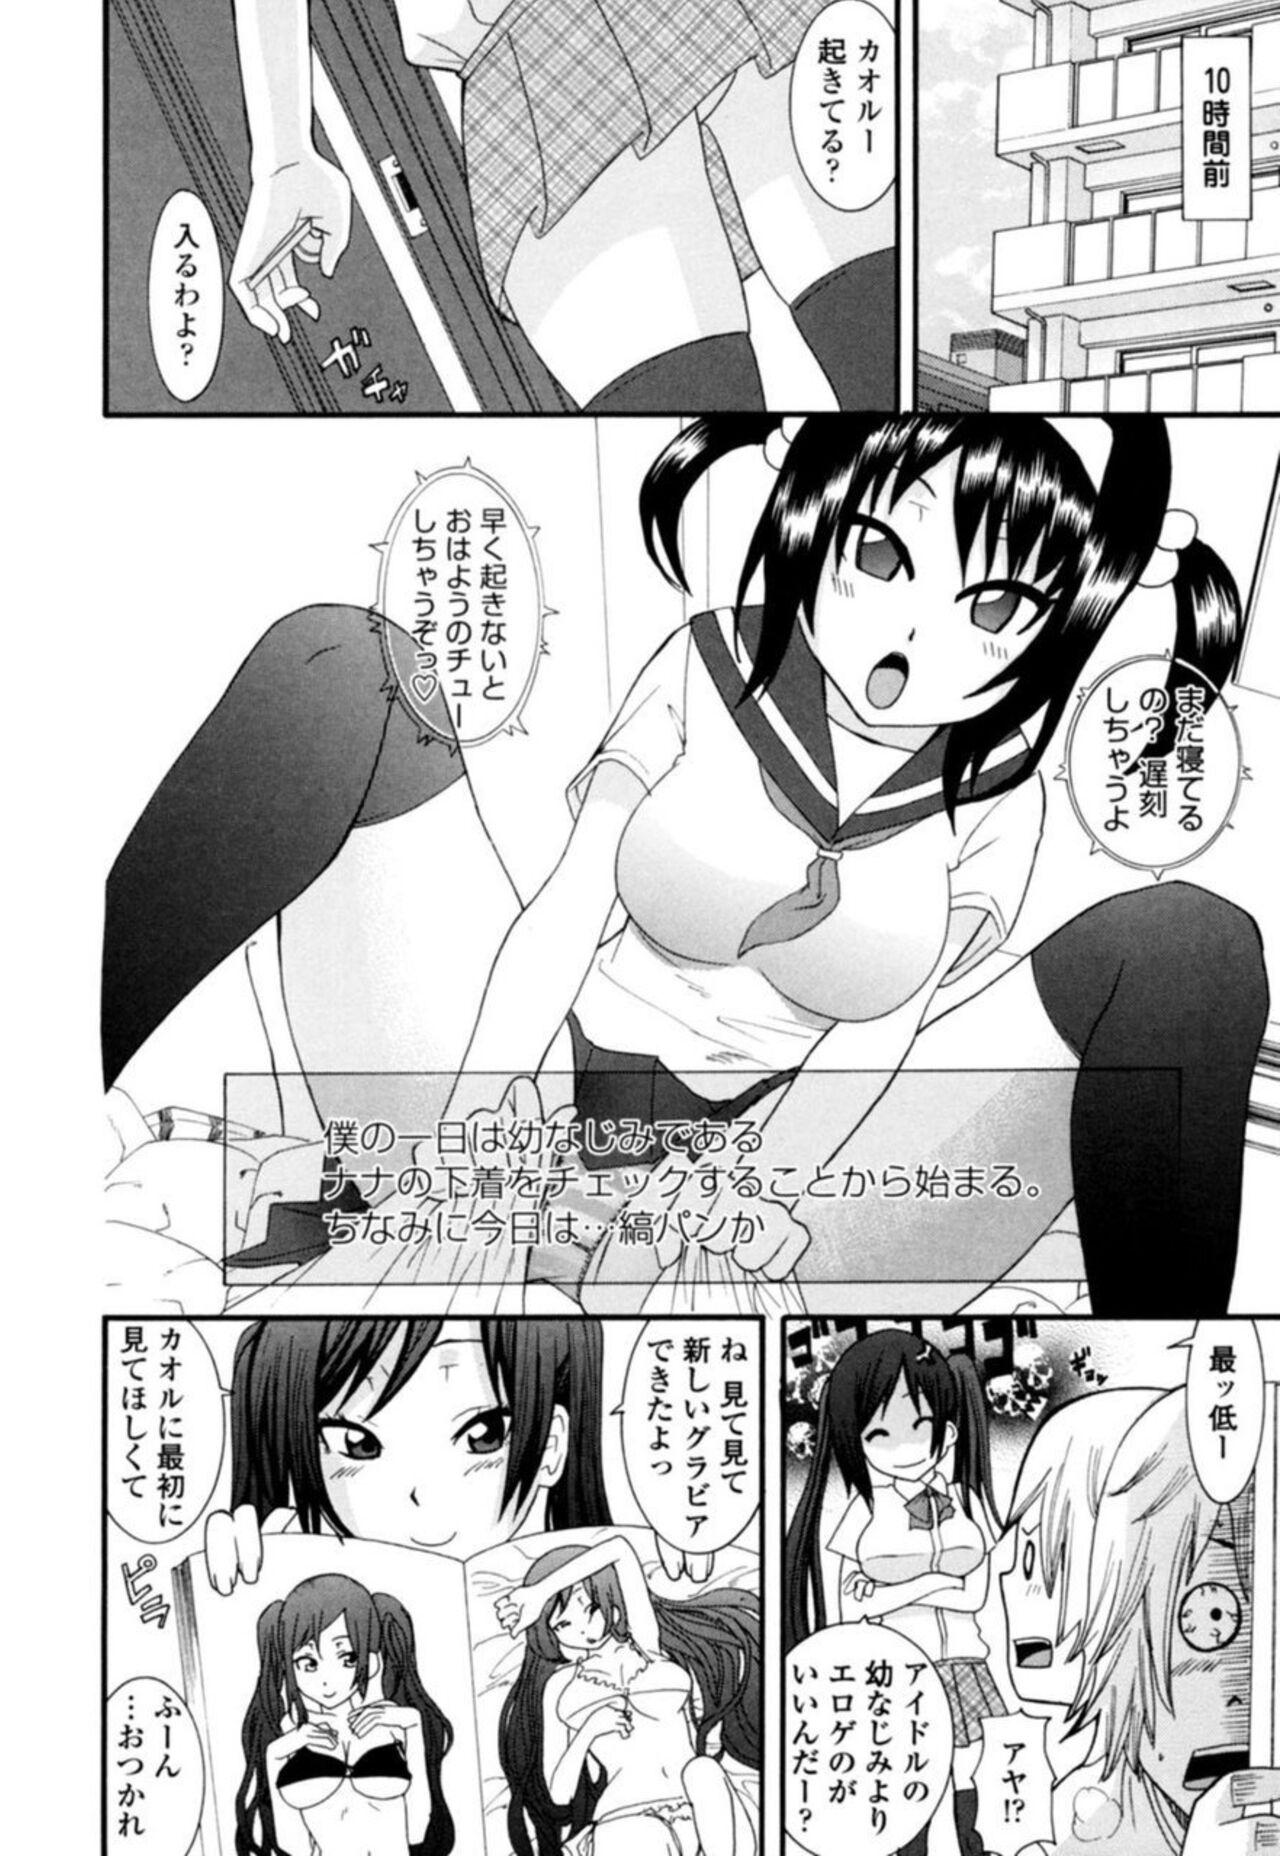 Porno Amateur [Nakamine Hiroshi] Ane ni Nari Kiri Shiru Joyū!?~ Mubōbi bijo o Yari Taoshi ~ 1 Gordibuena - Page 4